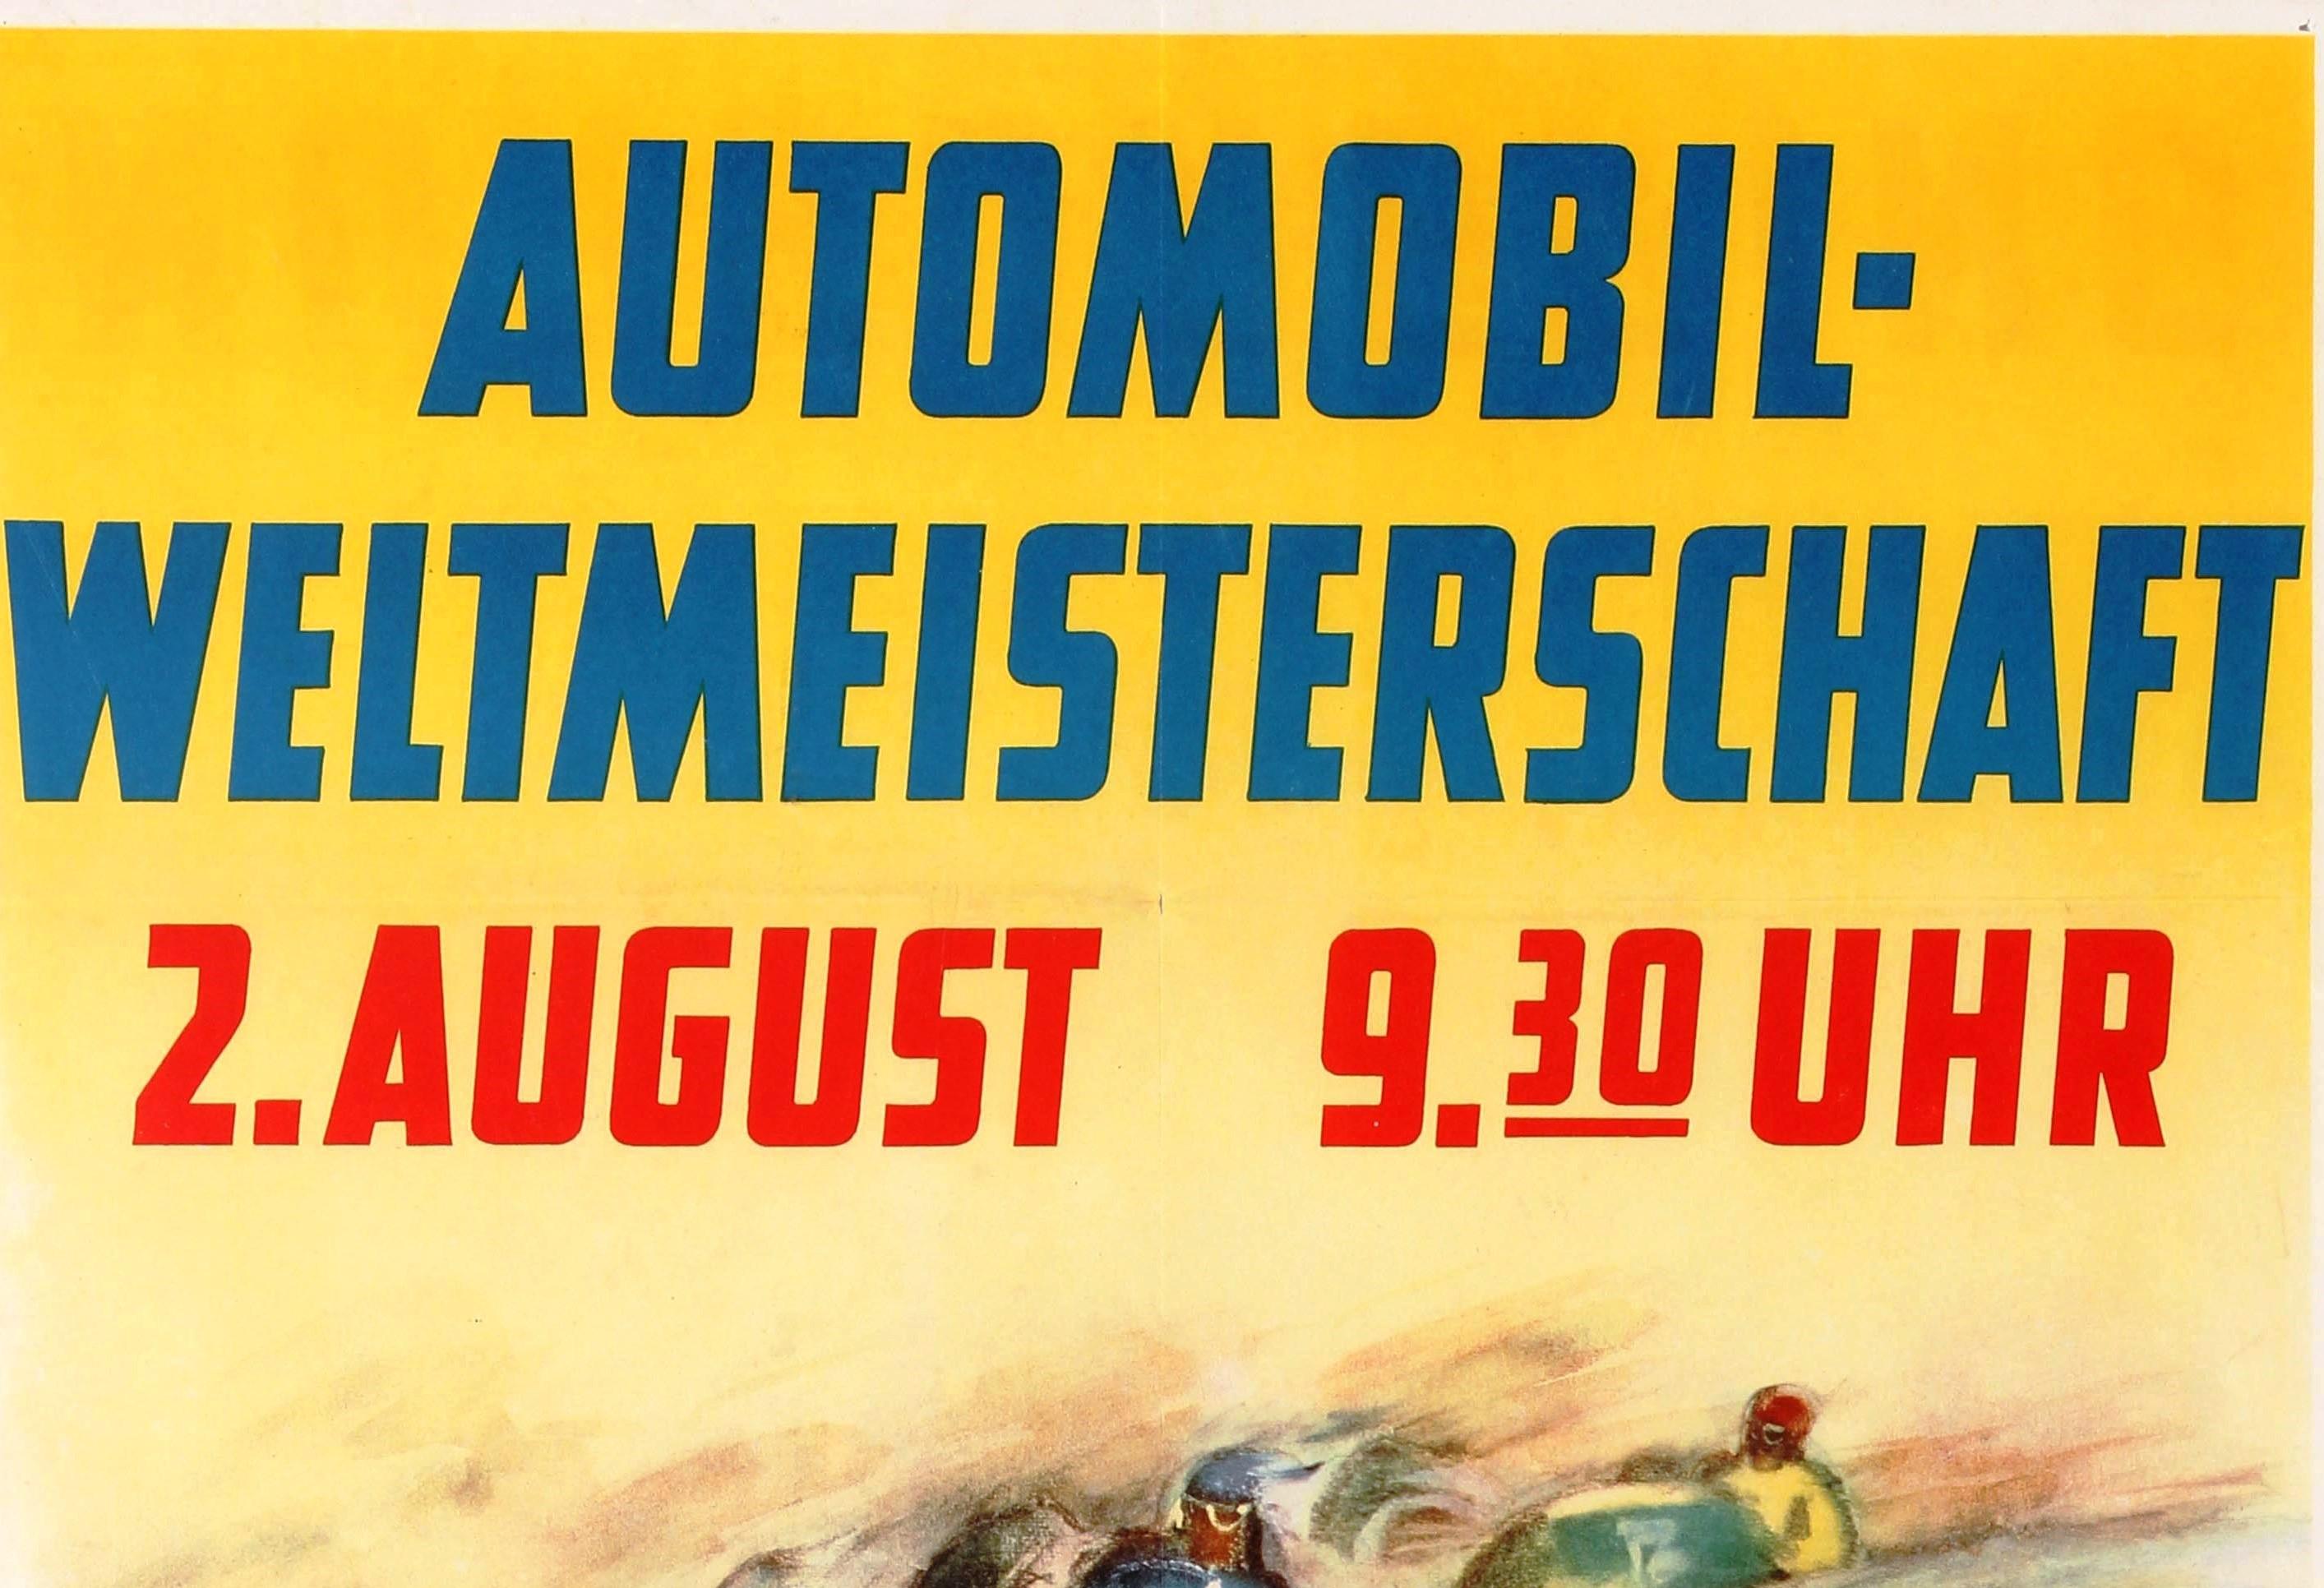 Original-F1-Motorsportplakat mit Werbung für die Automobil-Weltmeisterschaft XVI. Großer Preis Von Deutschland Nürburgring / Automobile World Cup XVI Grand Prix of Germany, der am 2. August 1953 auf der Rennstrecke des Nürburgrings stattfand.